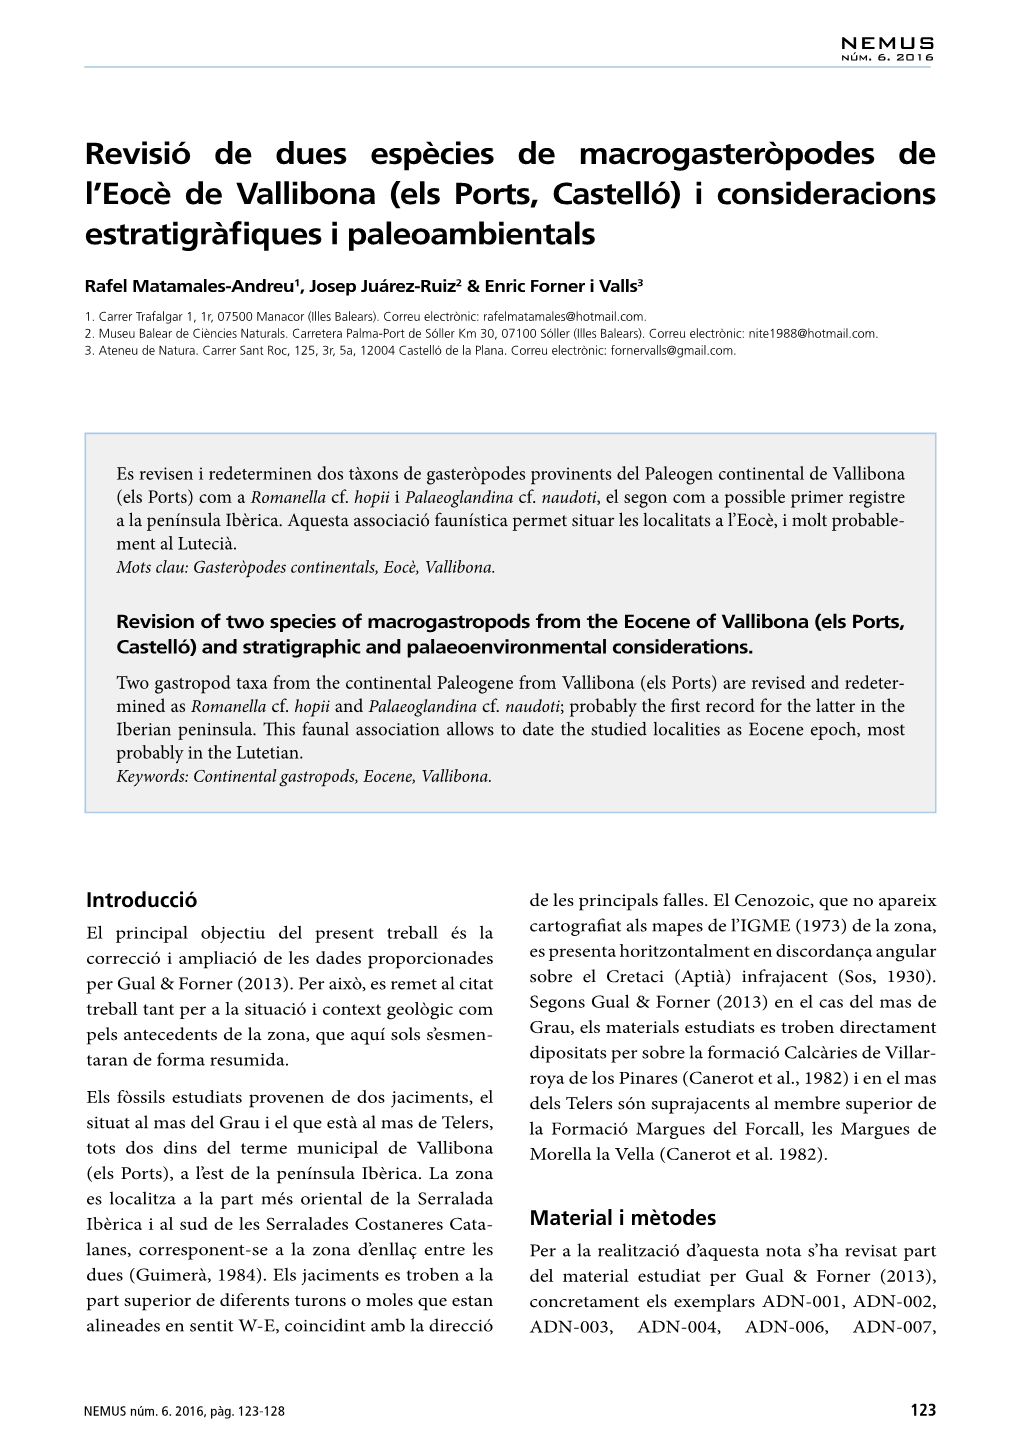 (Els Ports, Castelló) I Consideracions Estratigràfiques I Paleoambientals